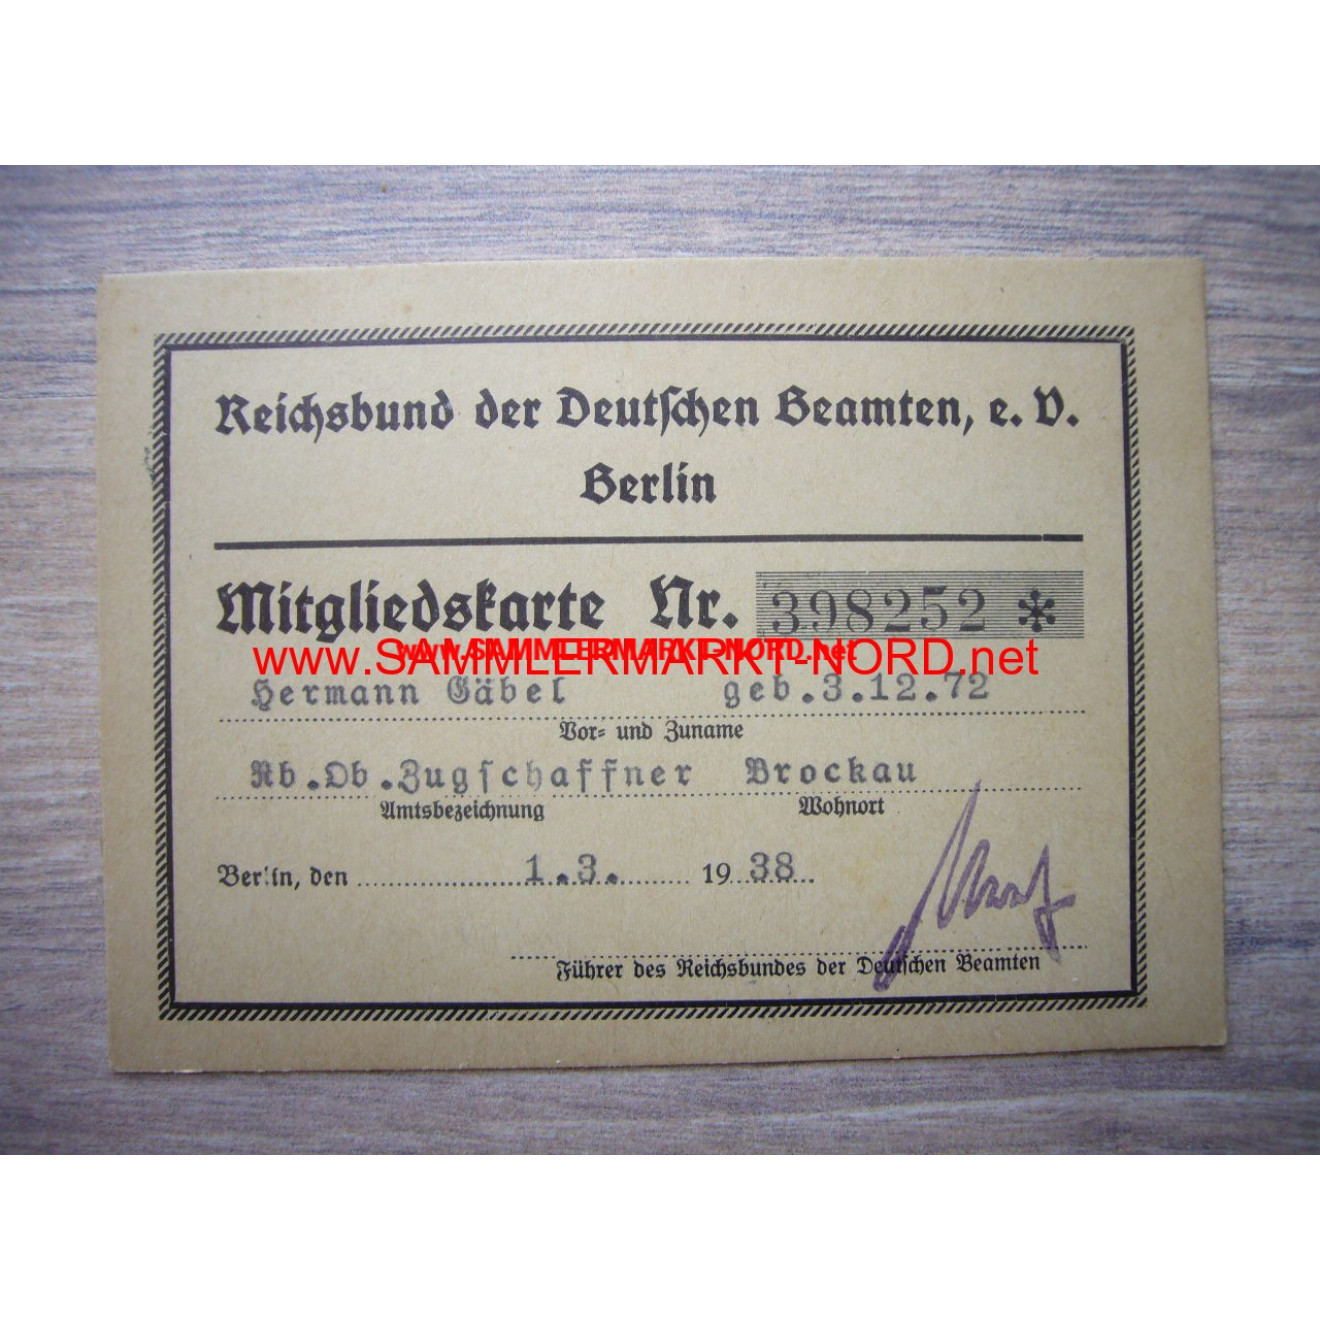 Reichsbund der Deutschen Beamten e.V. - membership card